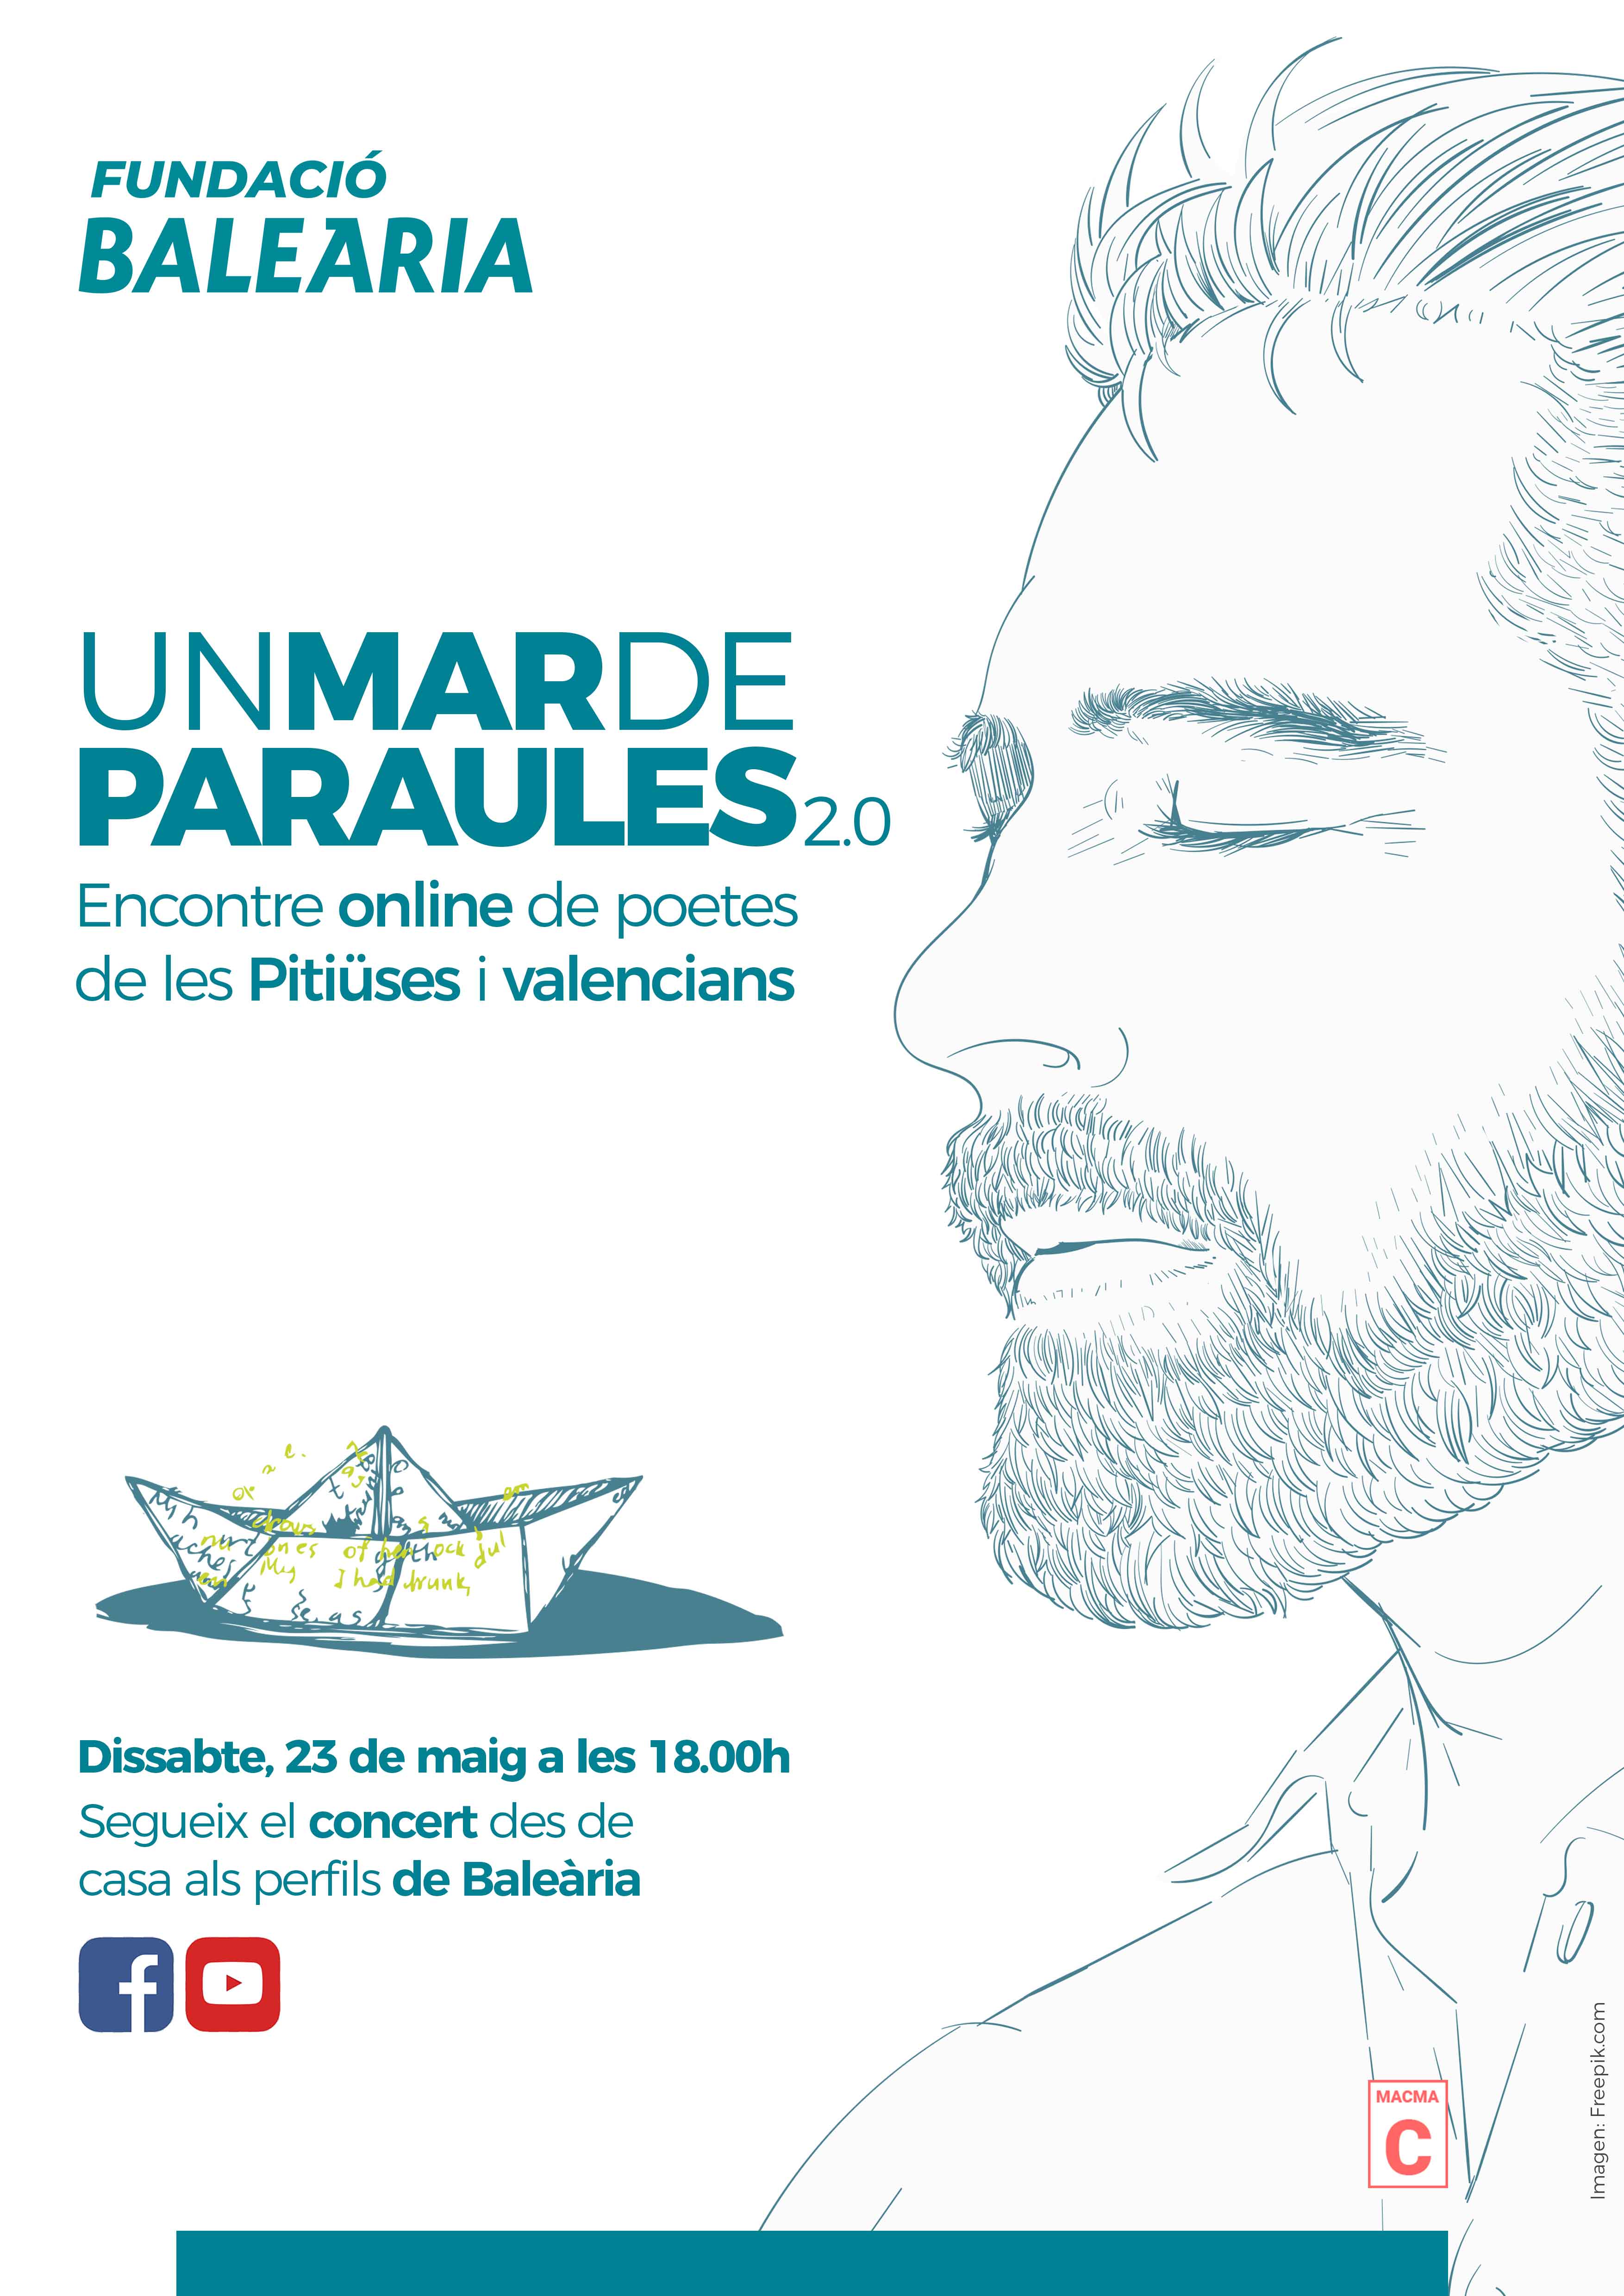 La Fundació Baleària organiza un encuentro ‘online’ de poetas valencianos y pitiusos